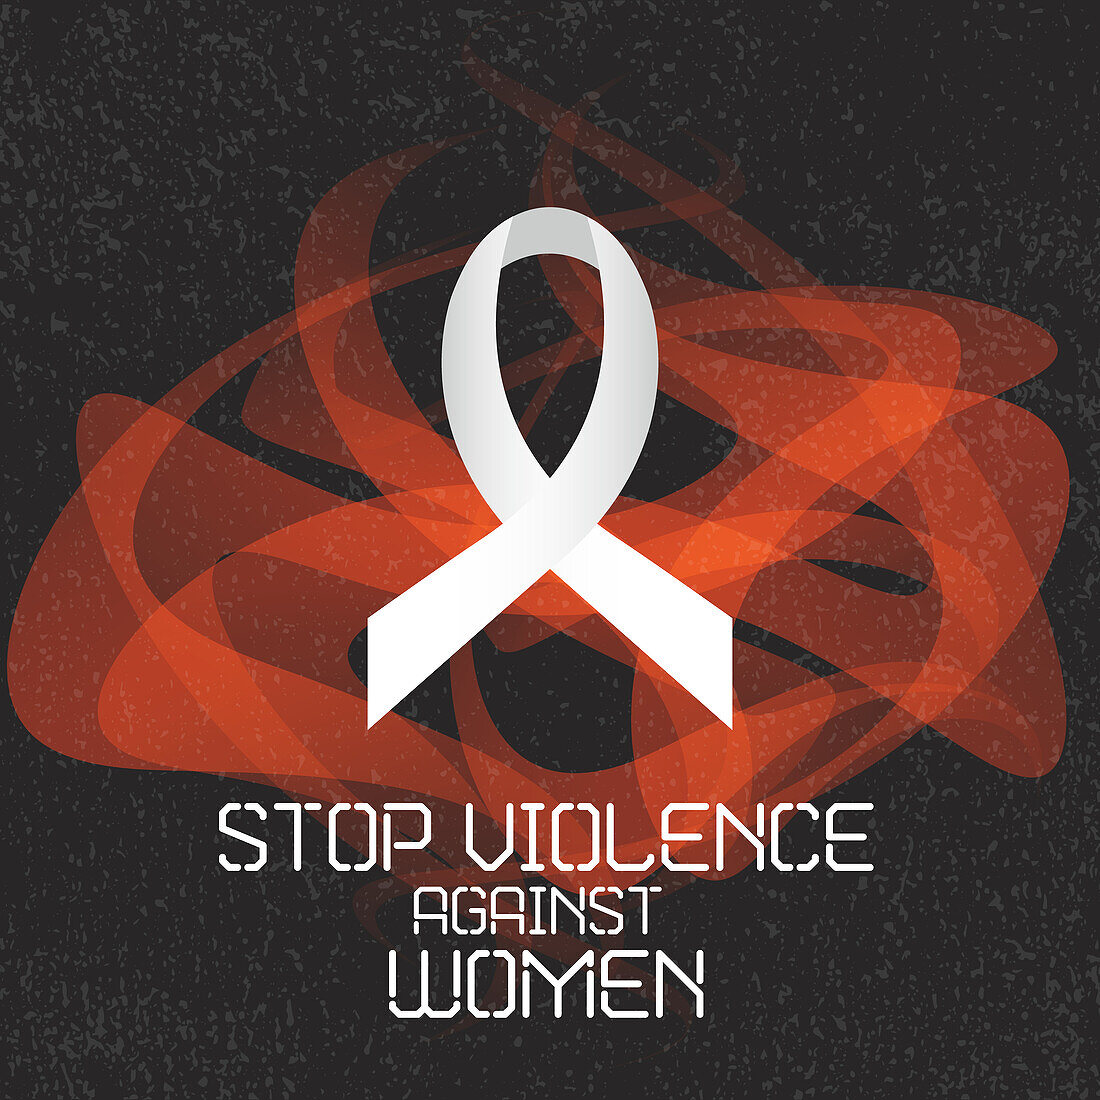 Awareness ribbon on violence against women, illustration